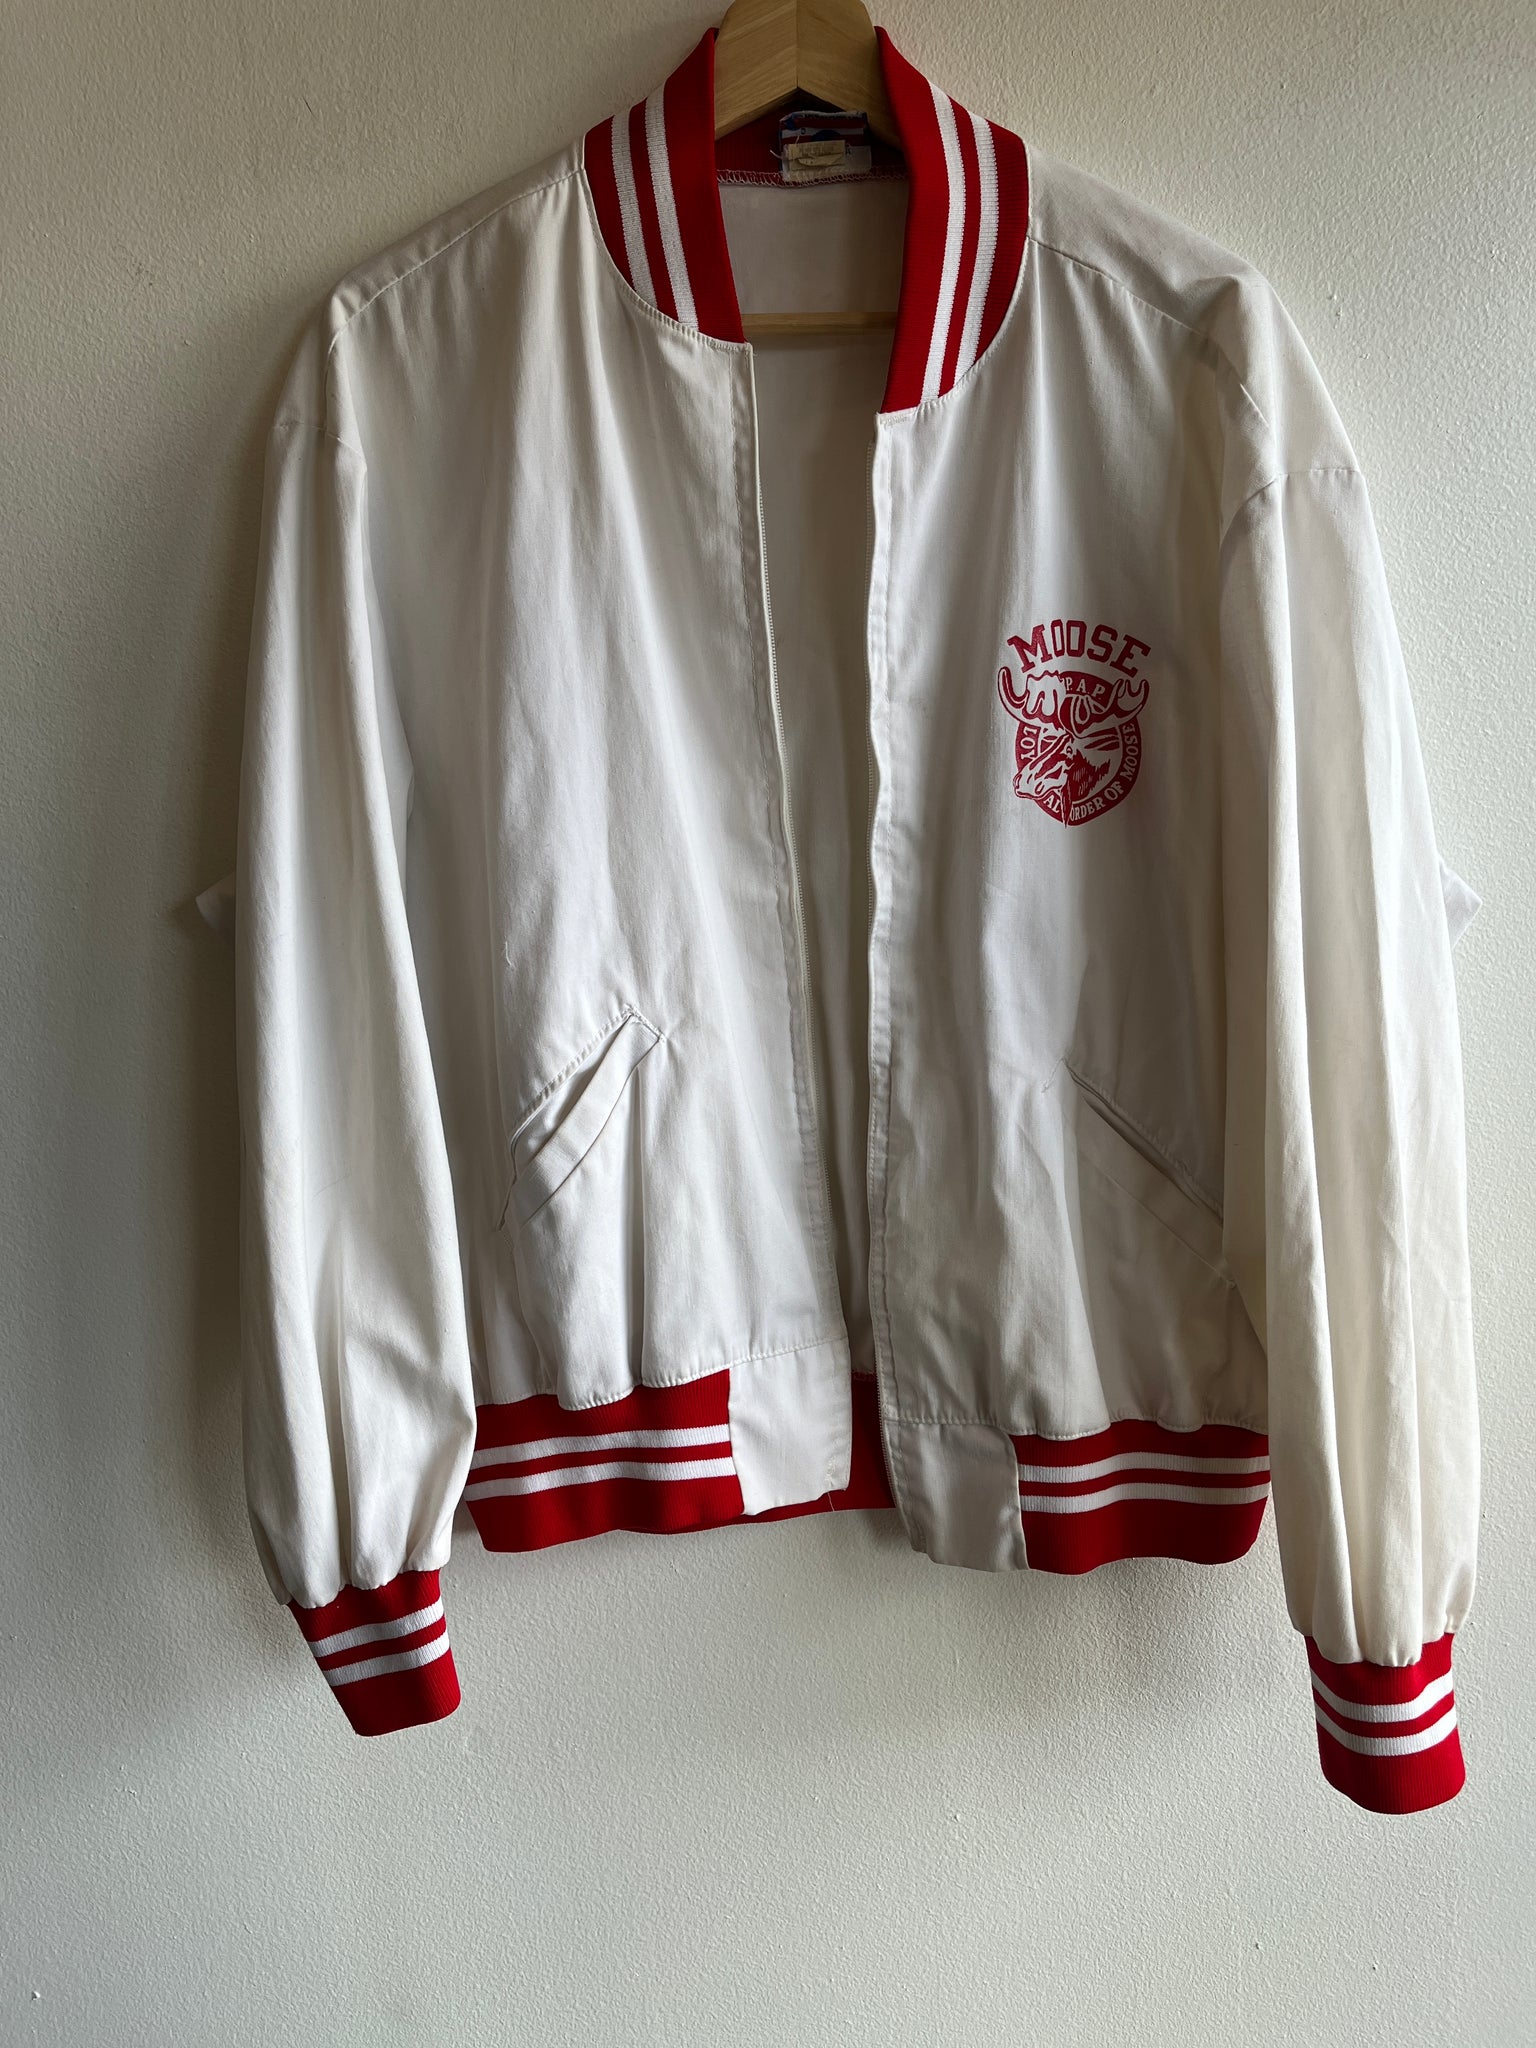 Vintage 1980/90’s “Loyal Order of Moose” Champion Jacket